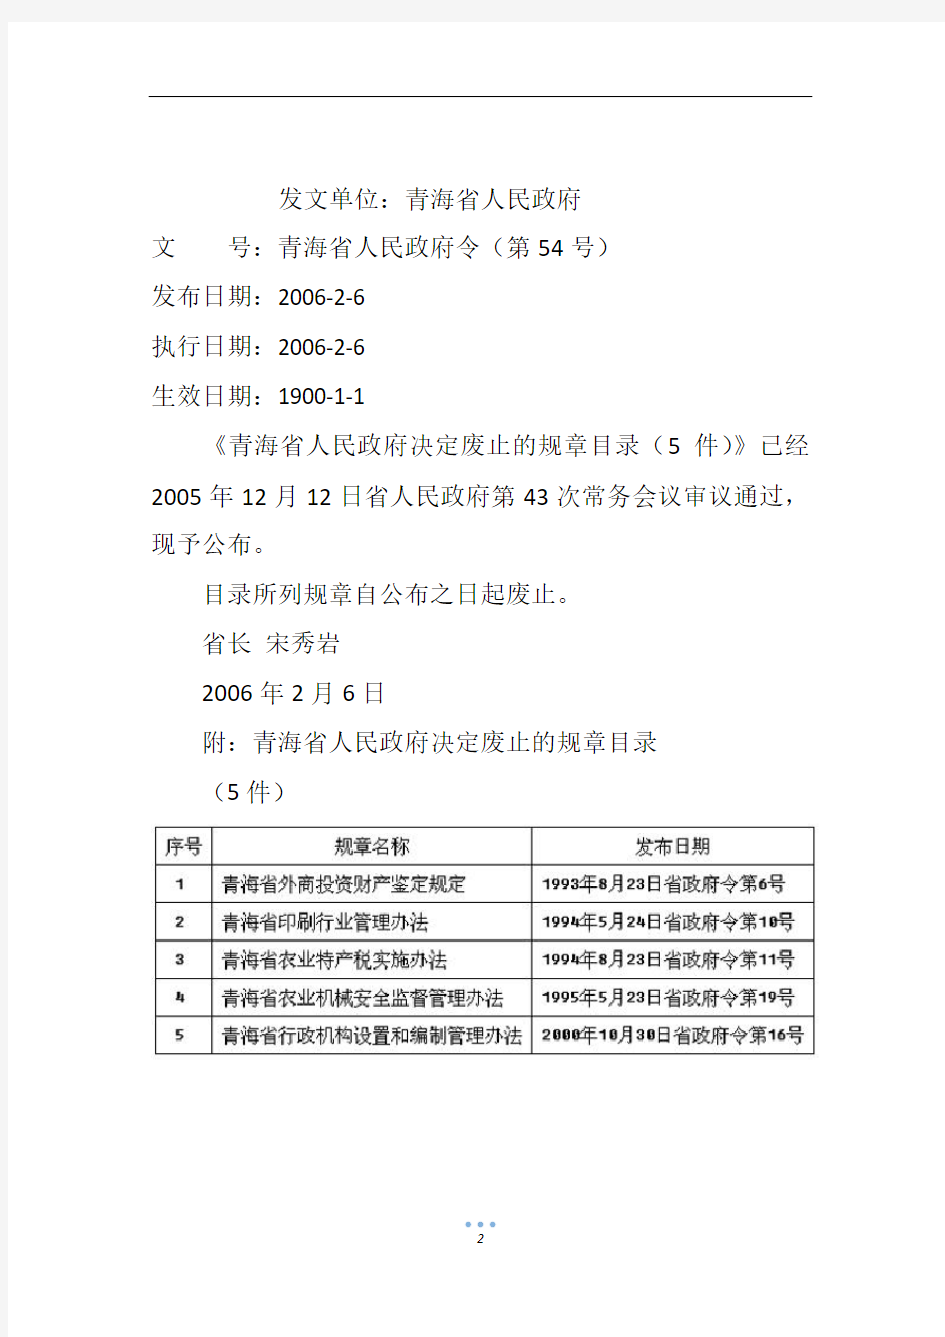 青海省人民政府决定废止的规章目录(5件)